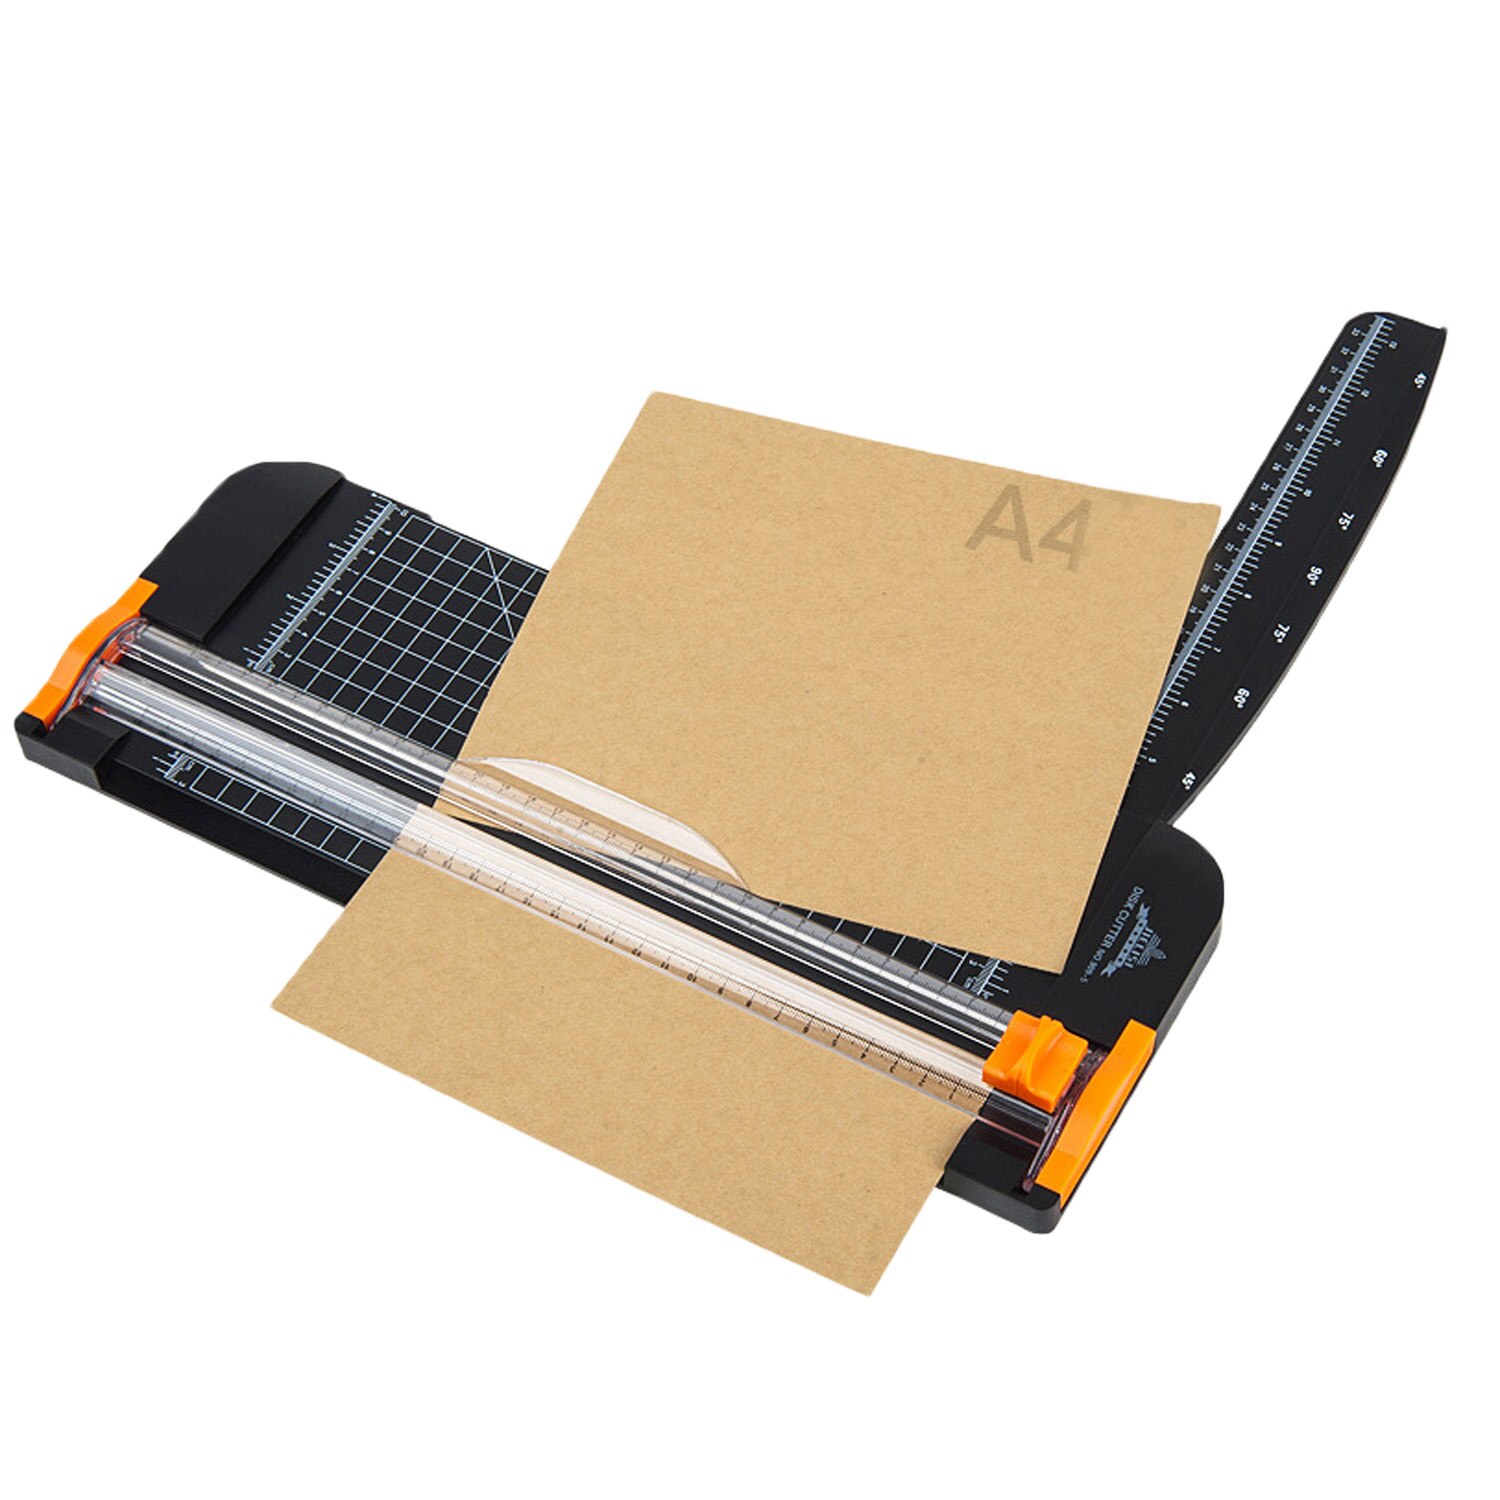 A4 papir trimmer papirskærer guillotine med sikkerhedsgaranti guillotine side lineal til standard skære papir fotomærkater